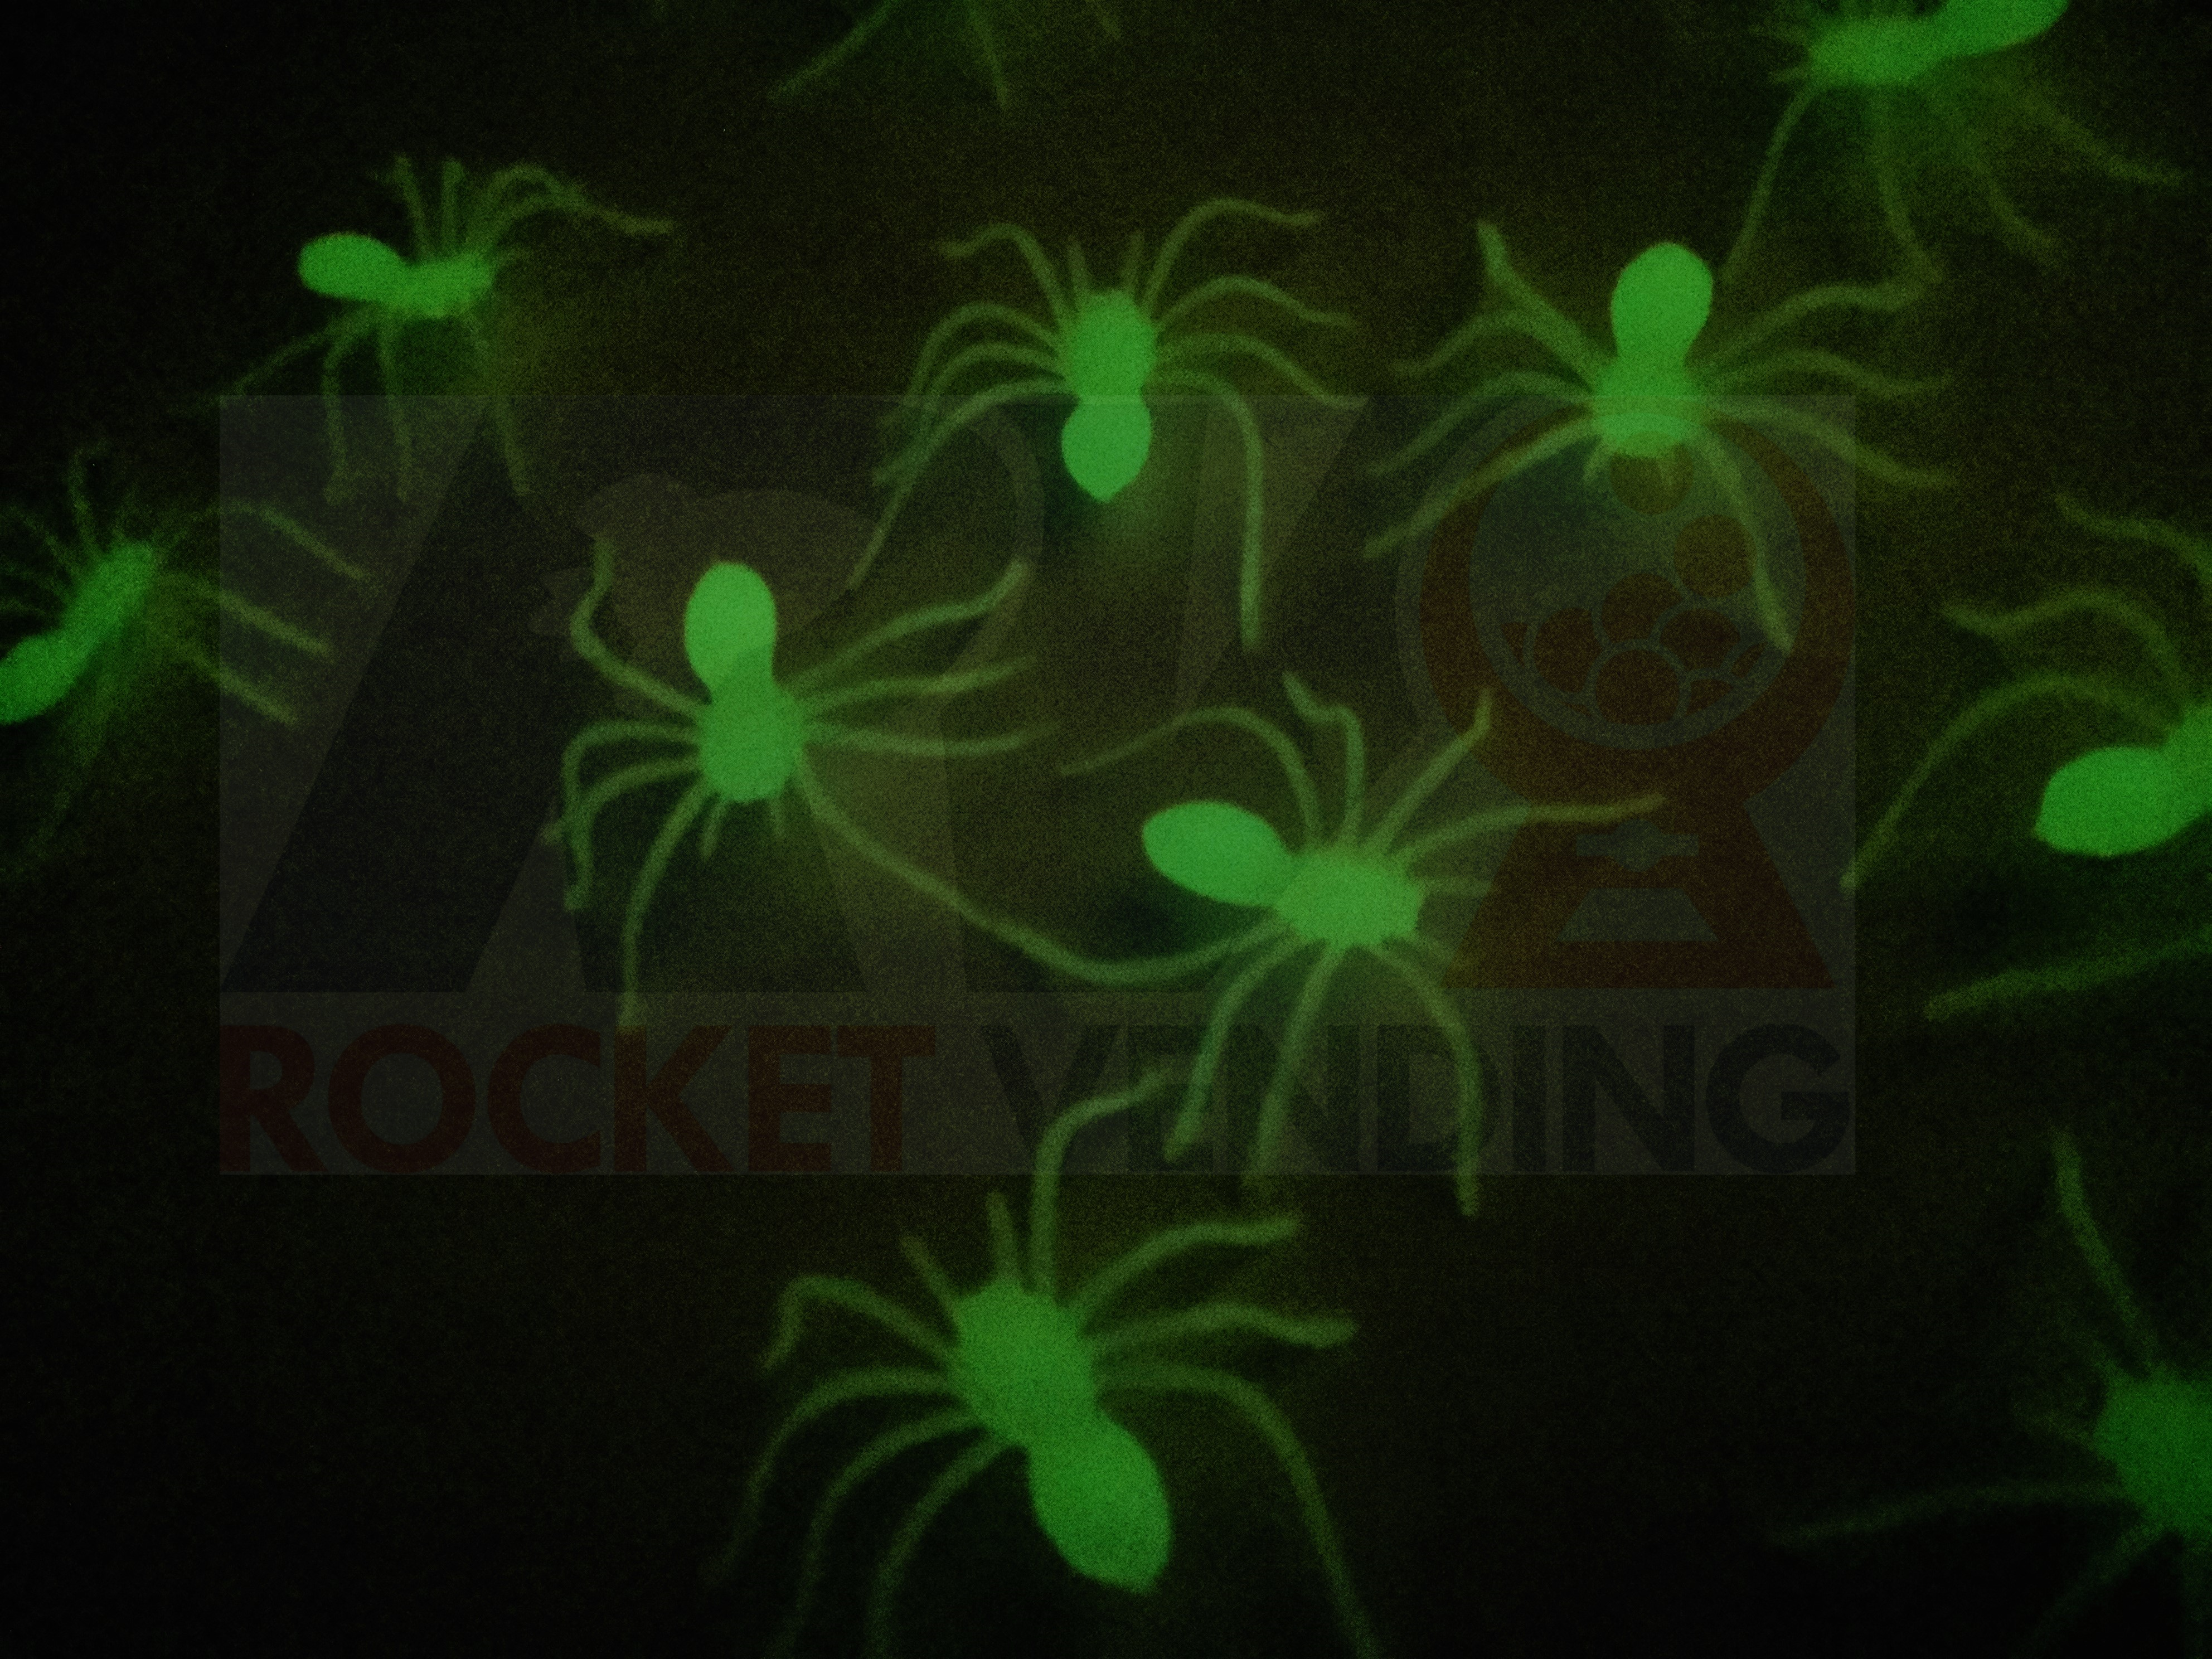 50 Arañitas Encapsuladas 2 pulgadas Brillan en la oscuridad 2p - Rocket Vending Todo en Chicleras